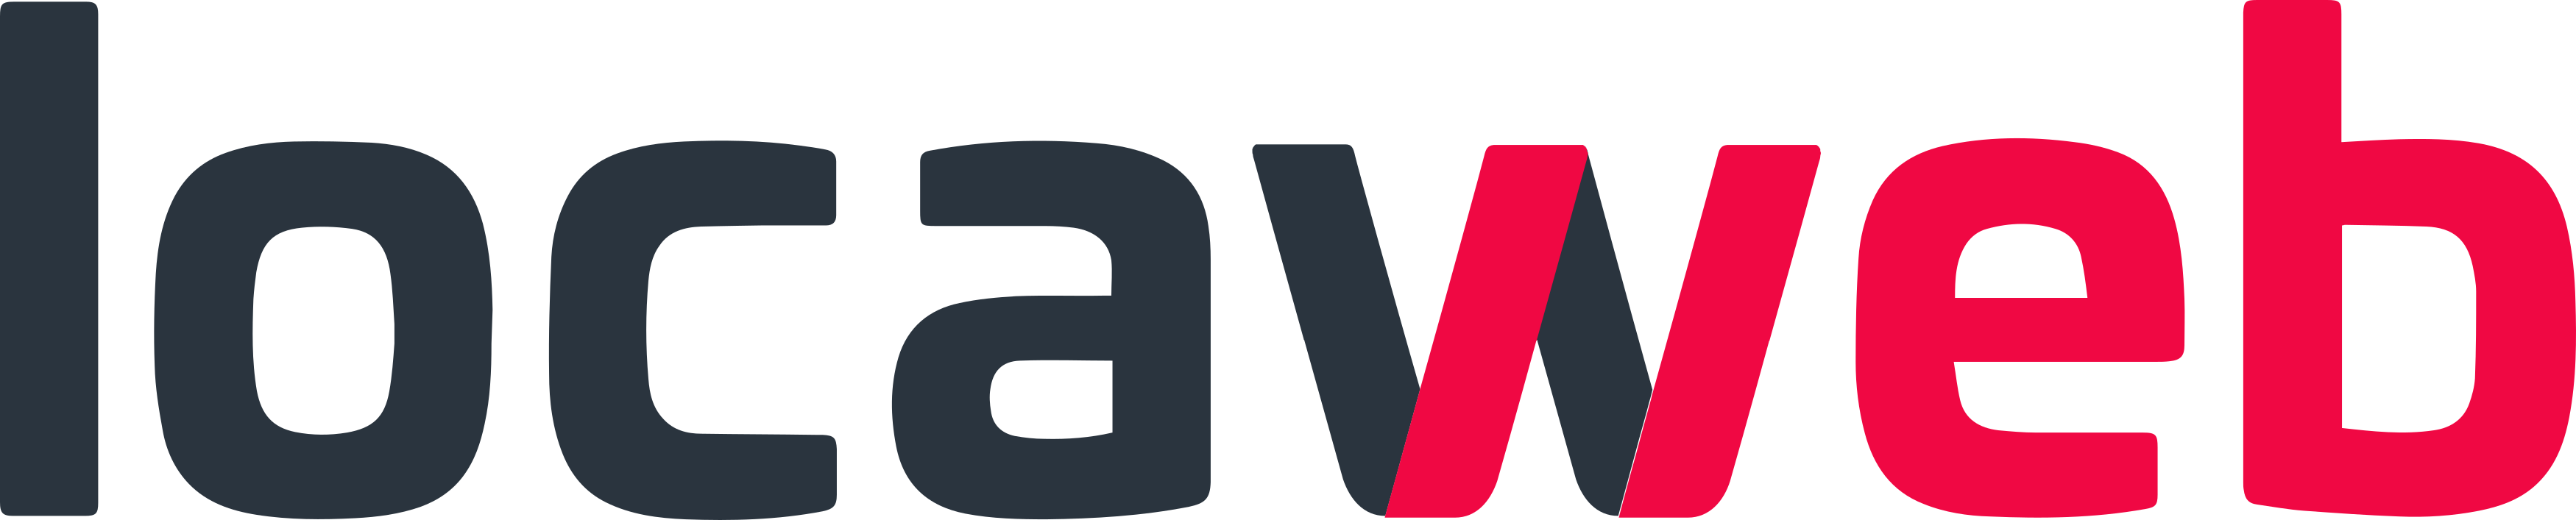 Locaweb Serviços de Internet S.A.  logo